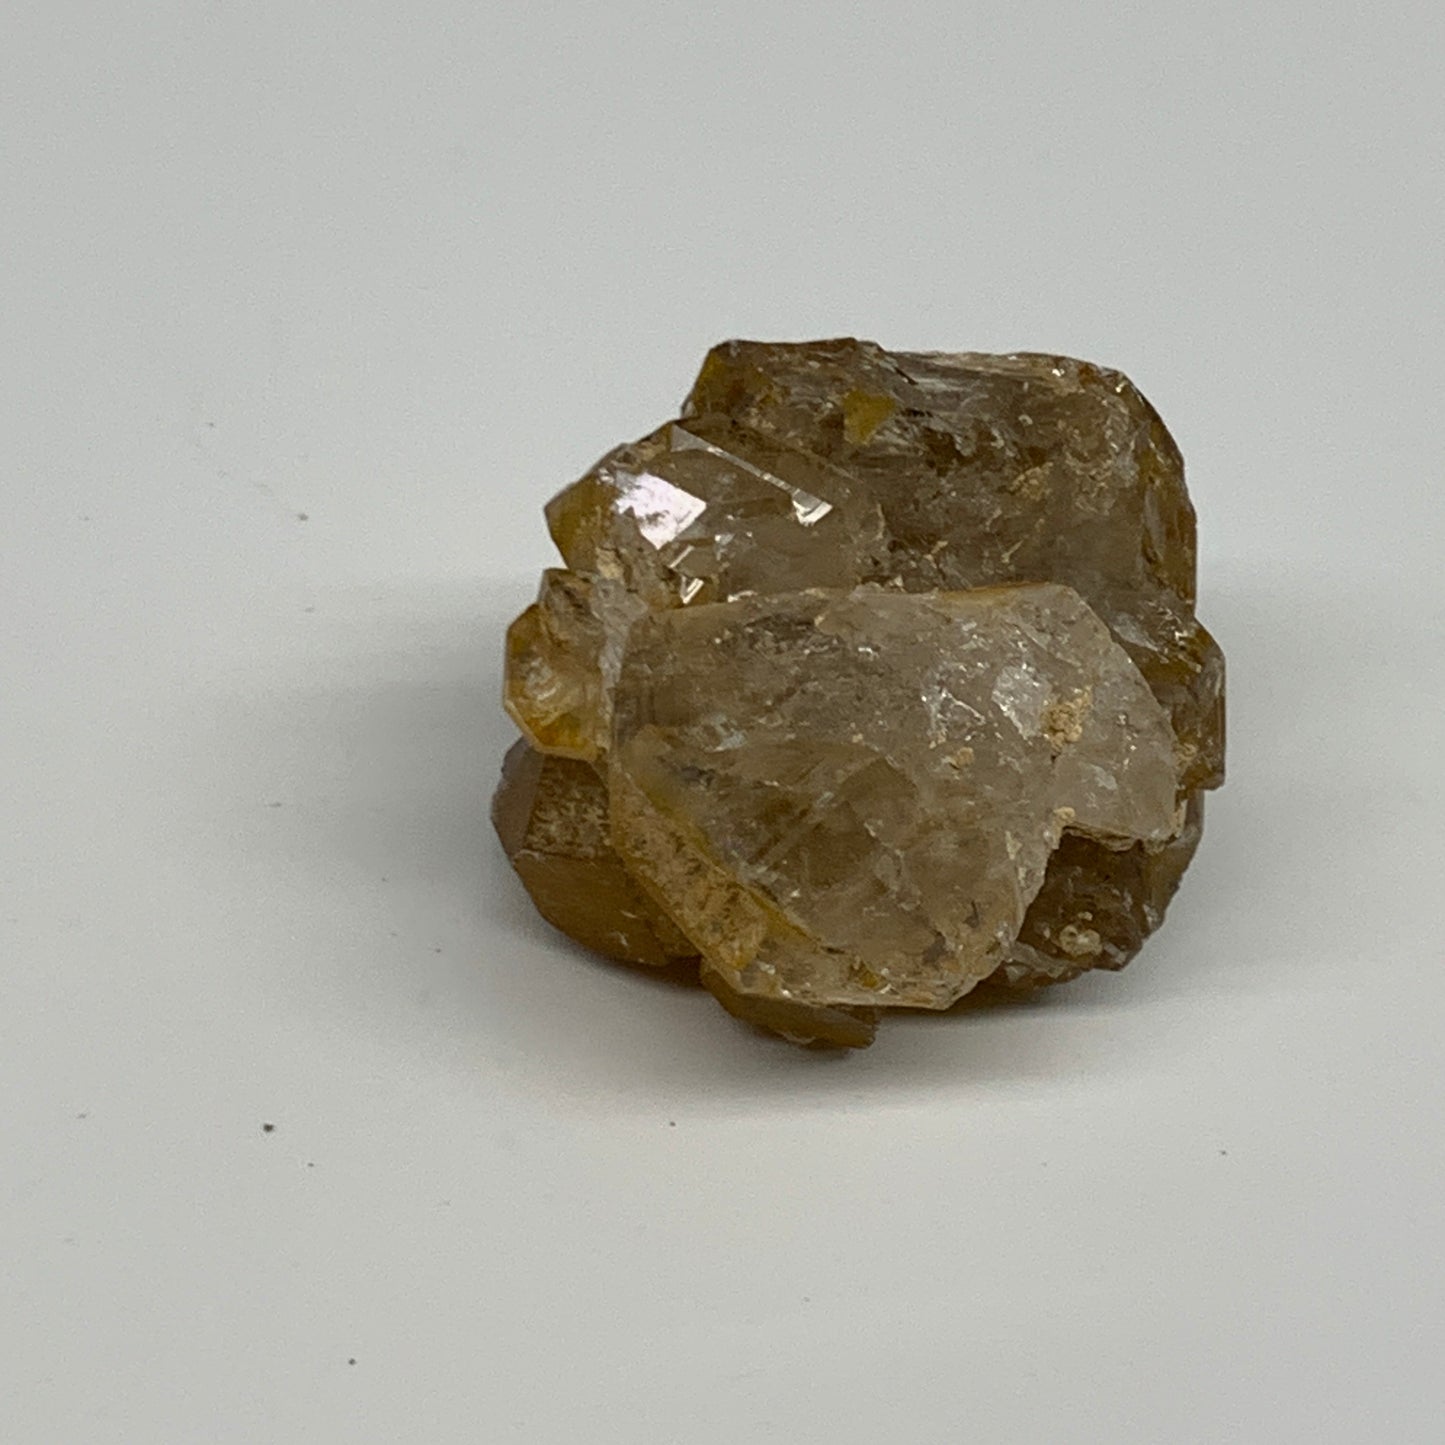 76.2g, 1.9"x1.7"x1.5", Natural Window Quartz Crystal Terminated @Pakistan,B27766